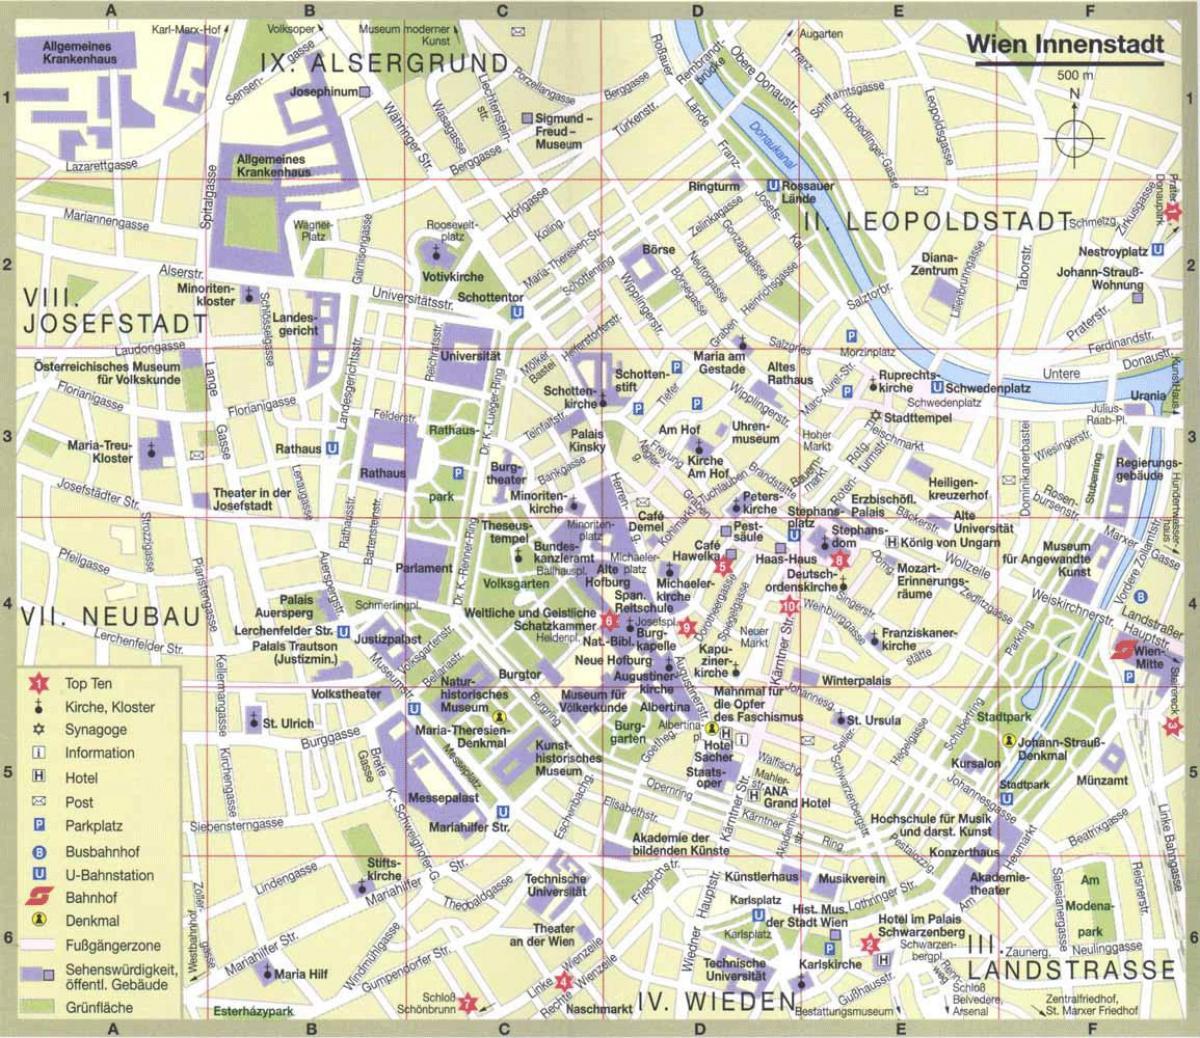 Вена карта города